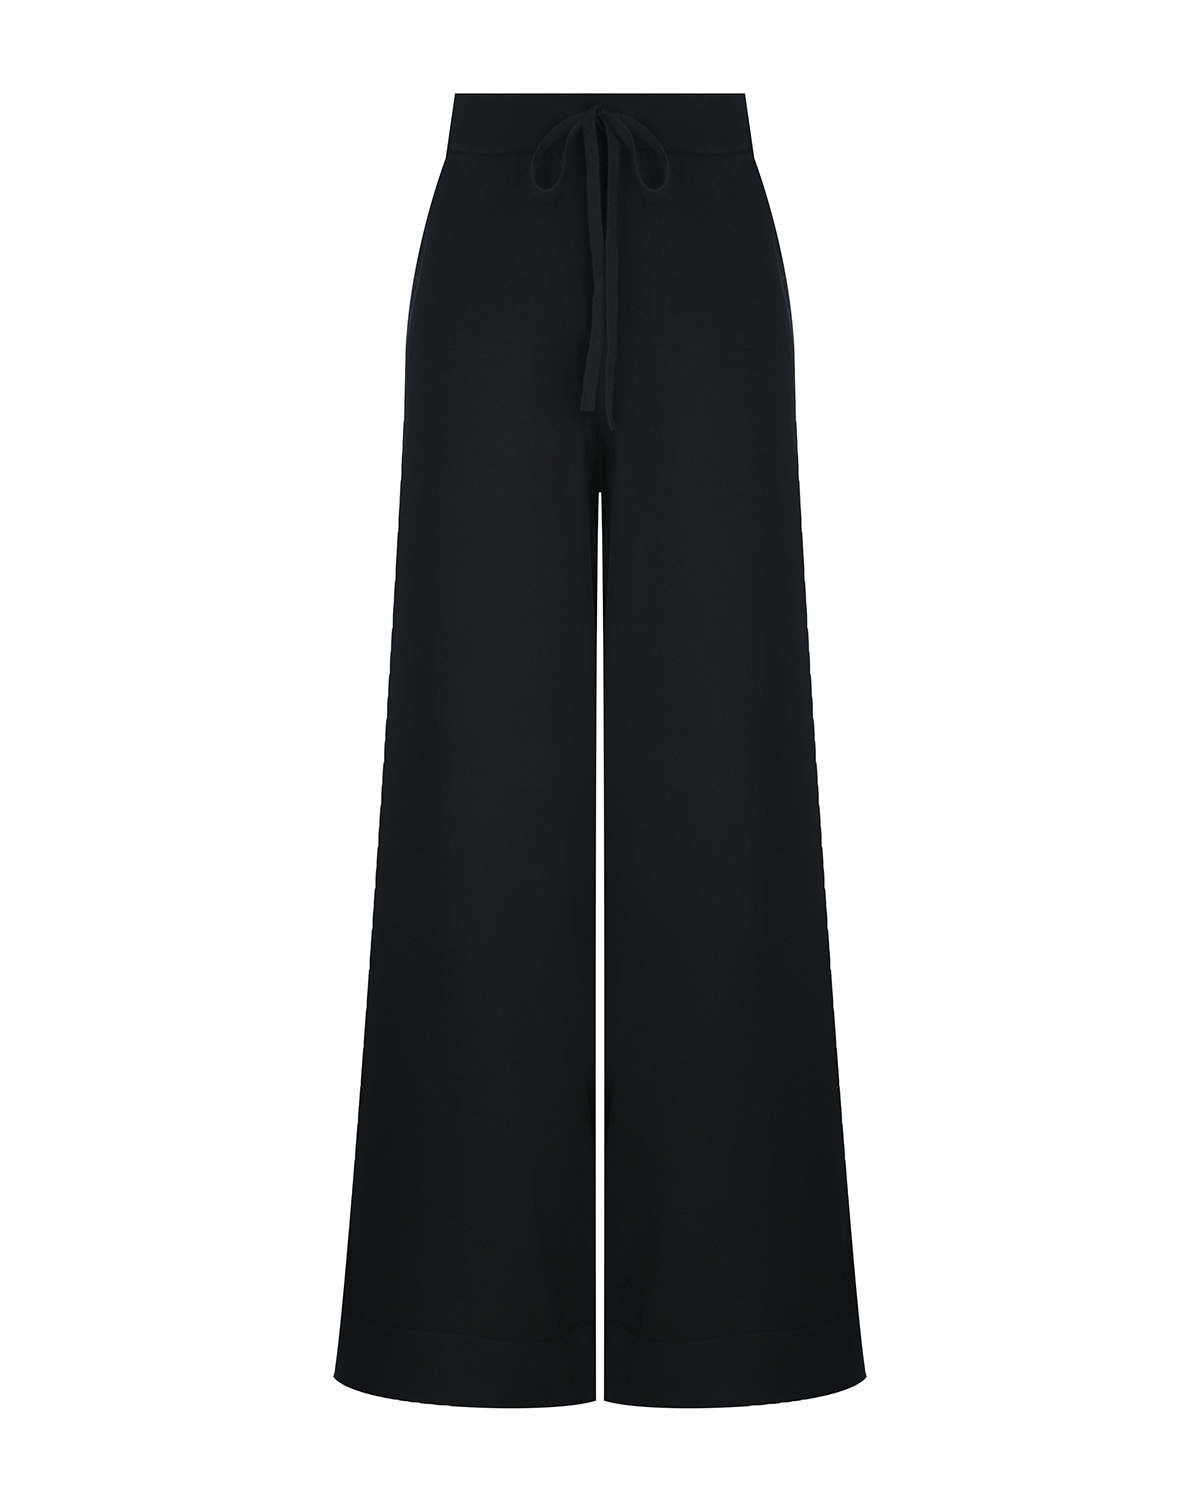 Черные трикотажные брюки-палаццо Dorothee Schumacher, размер 44, цвет черный - фото 1